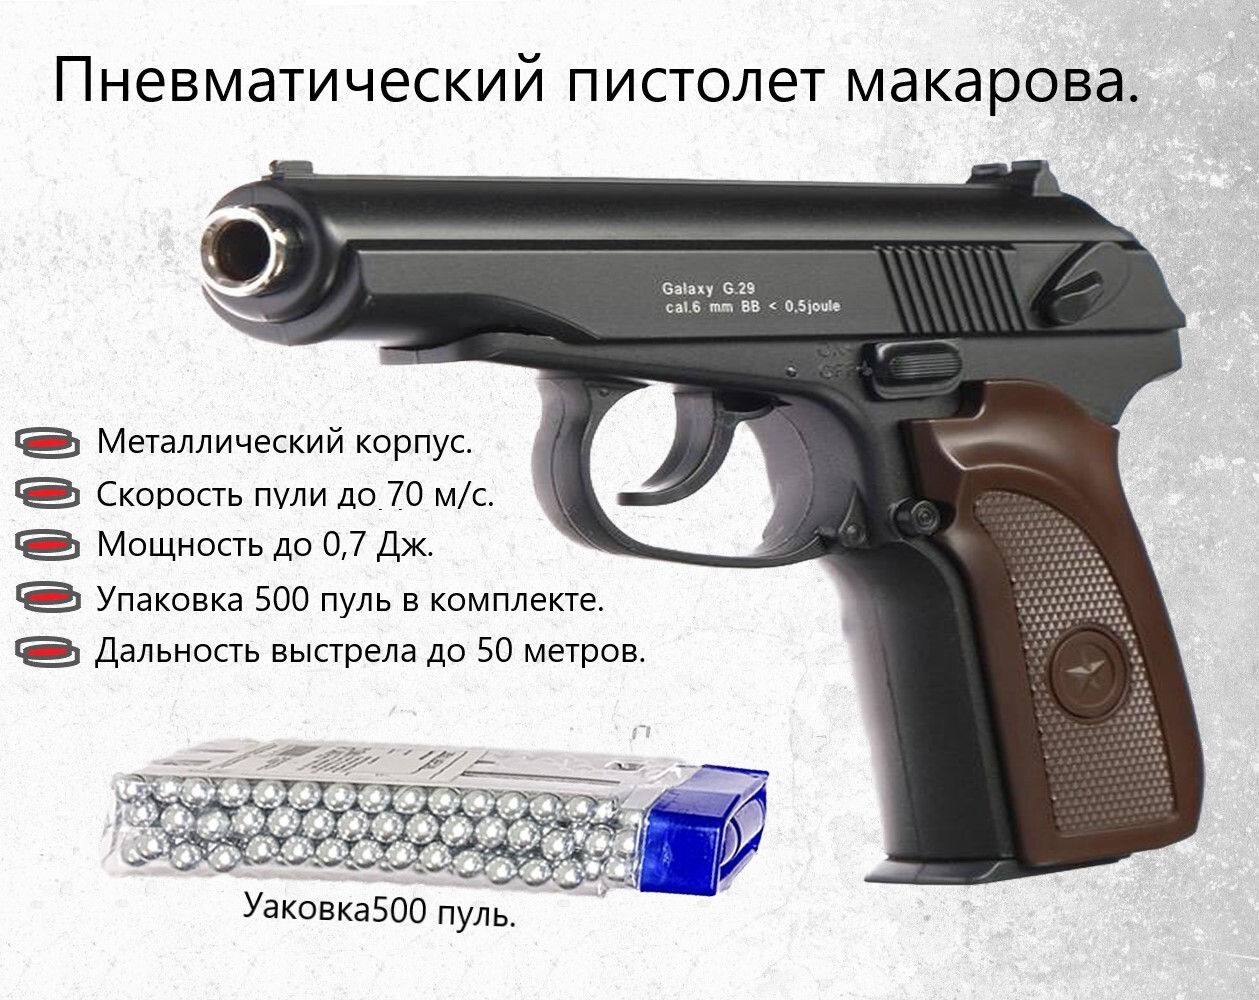 Пистолет Мр-658К Пм Blowback – купить в интернет-магазине OZON по выгоднойцене